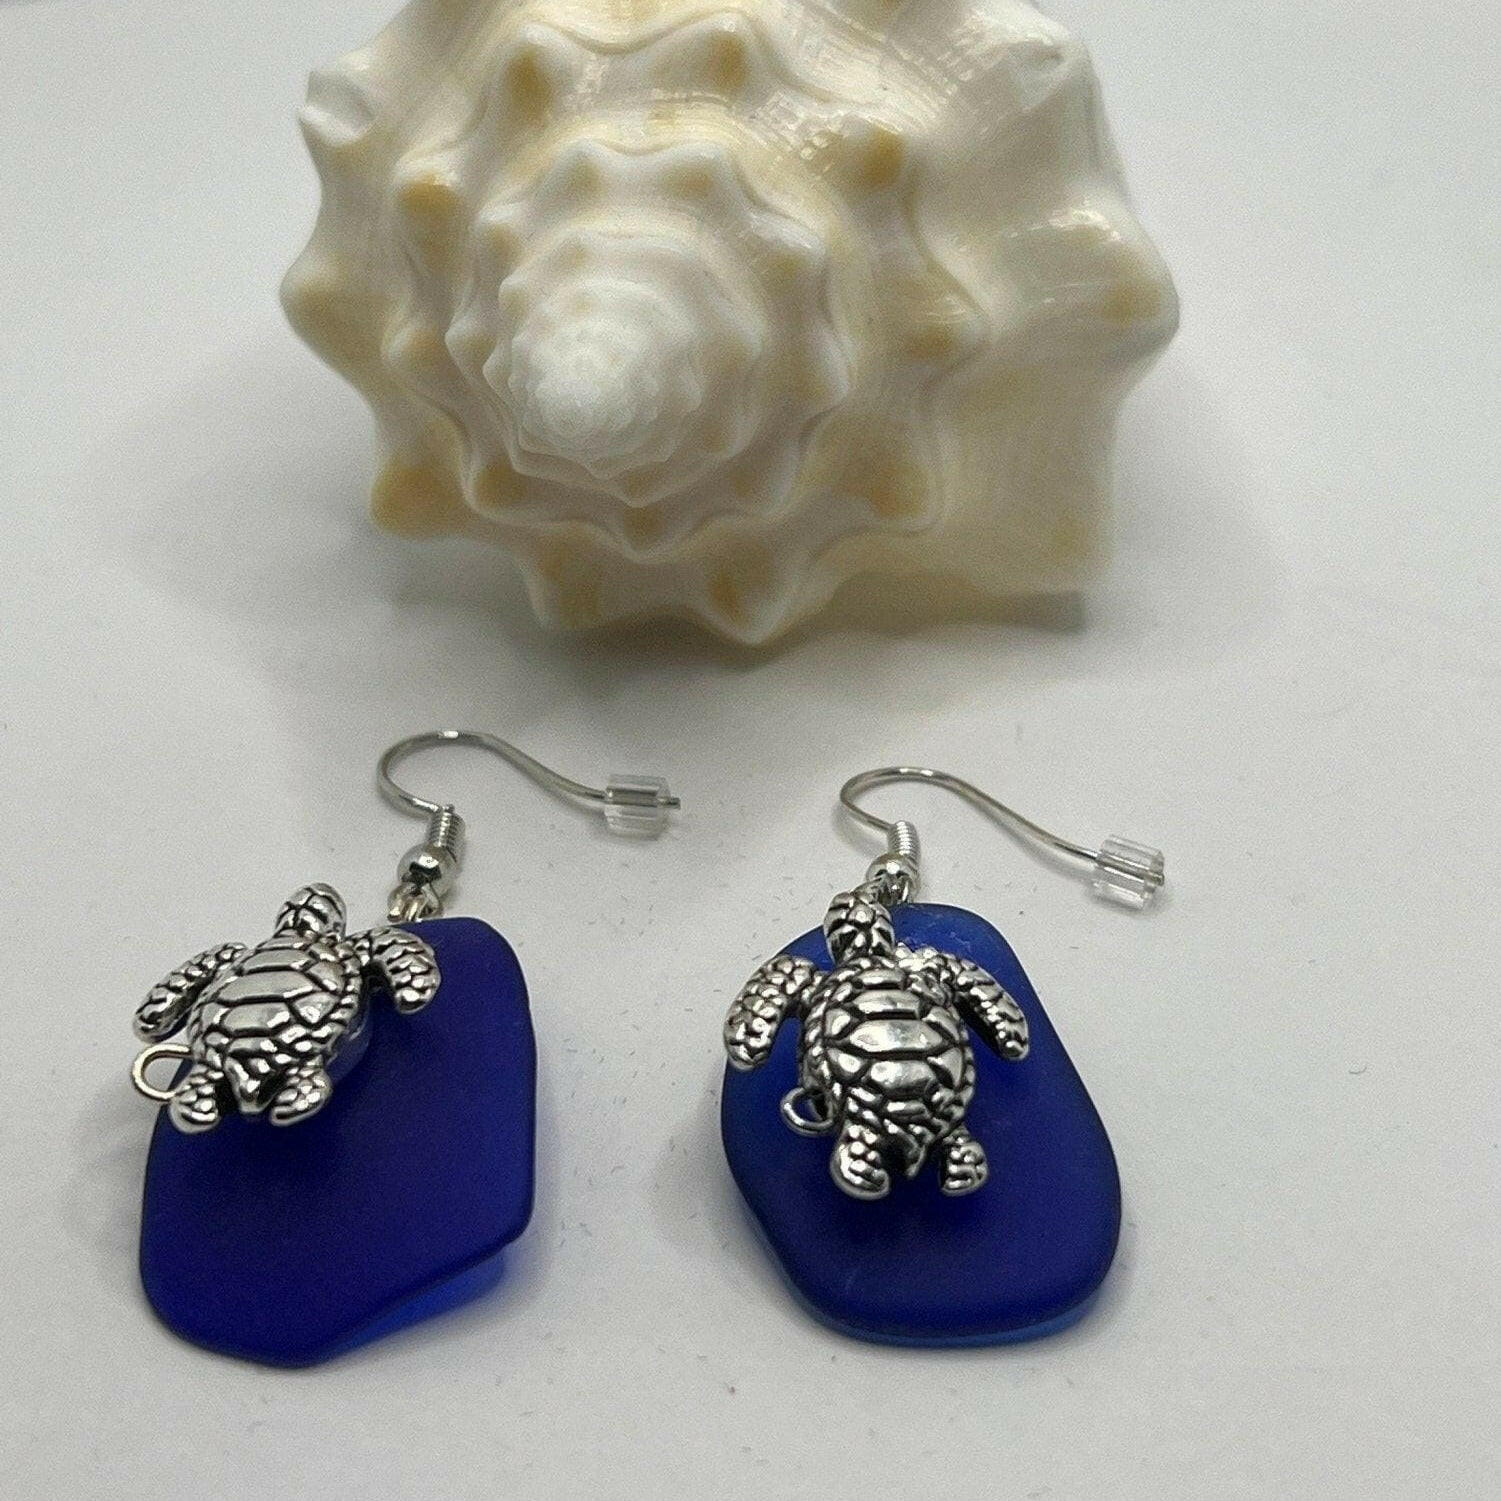 Bec Sue Jewelry Shop earrings 1 inch / blue/silver / silver turtle/blue glass Sea Turtle Jewelry, Sea Turtle Dangle Earrings Tags 477